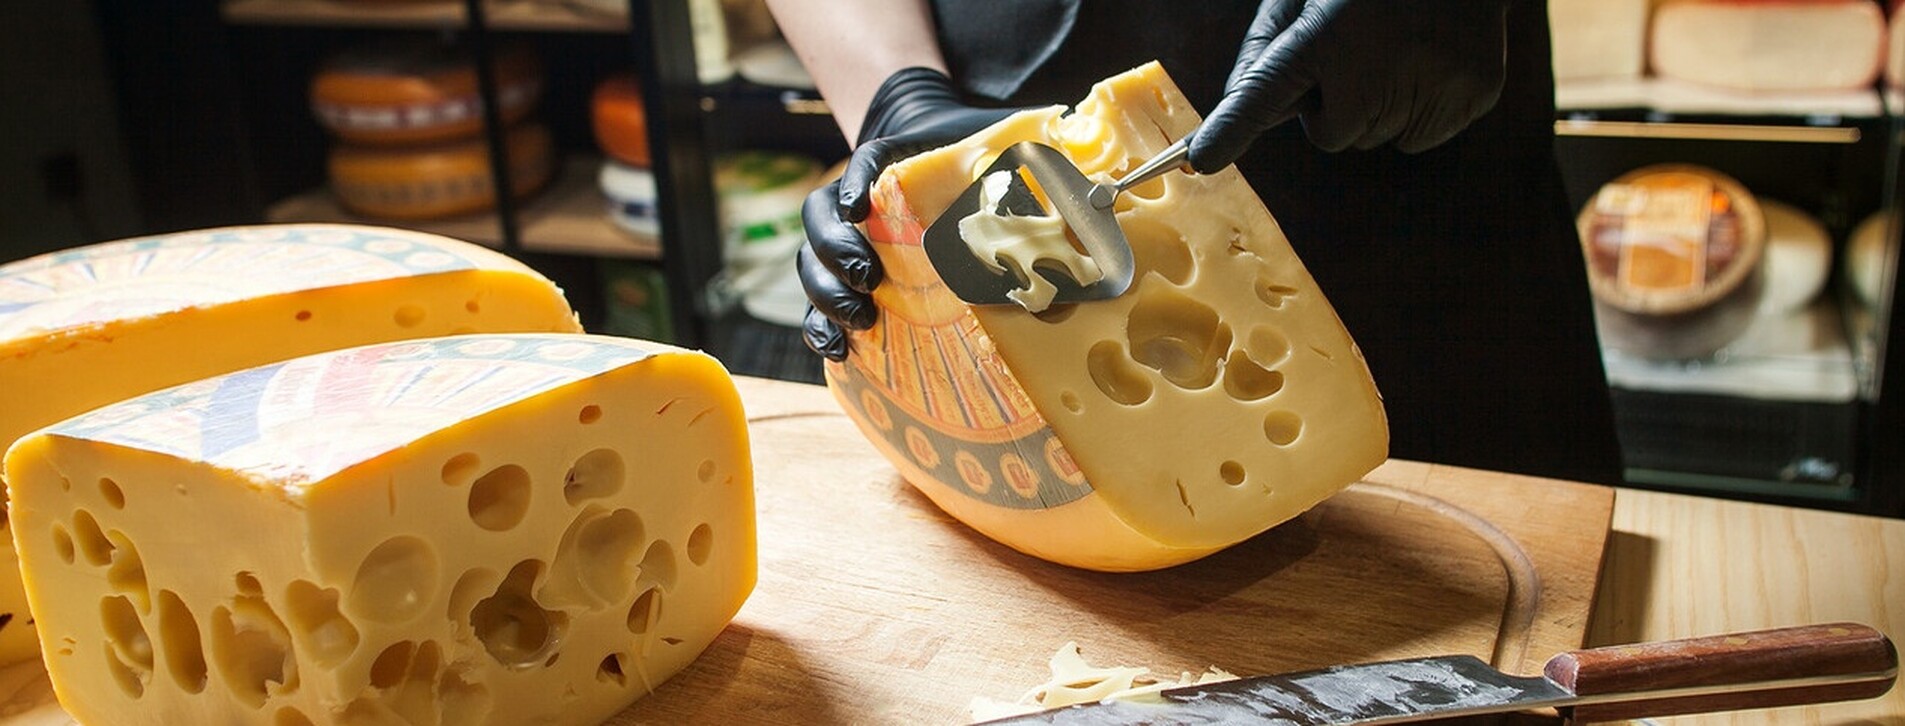 Фото 1 - Дегустация сыра для компании